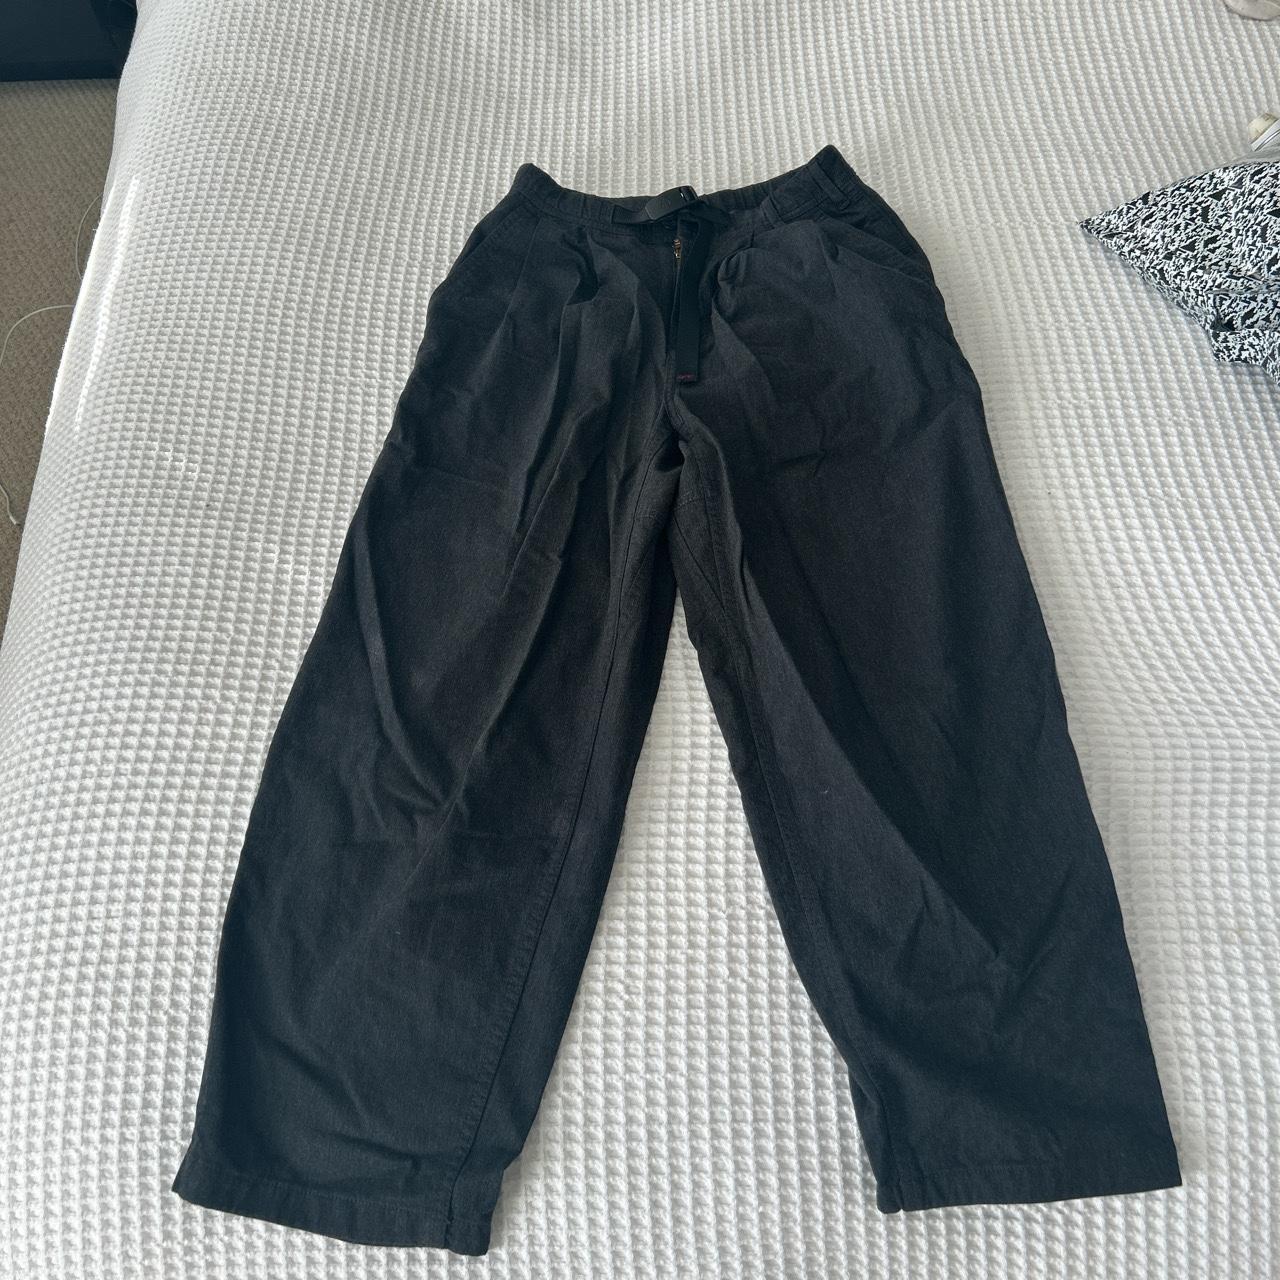 Asia S #gramicci culotte pants. Would fit size 6/8 - Depop